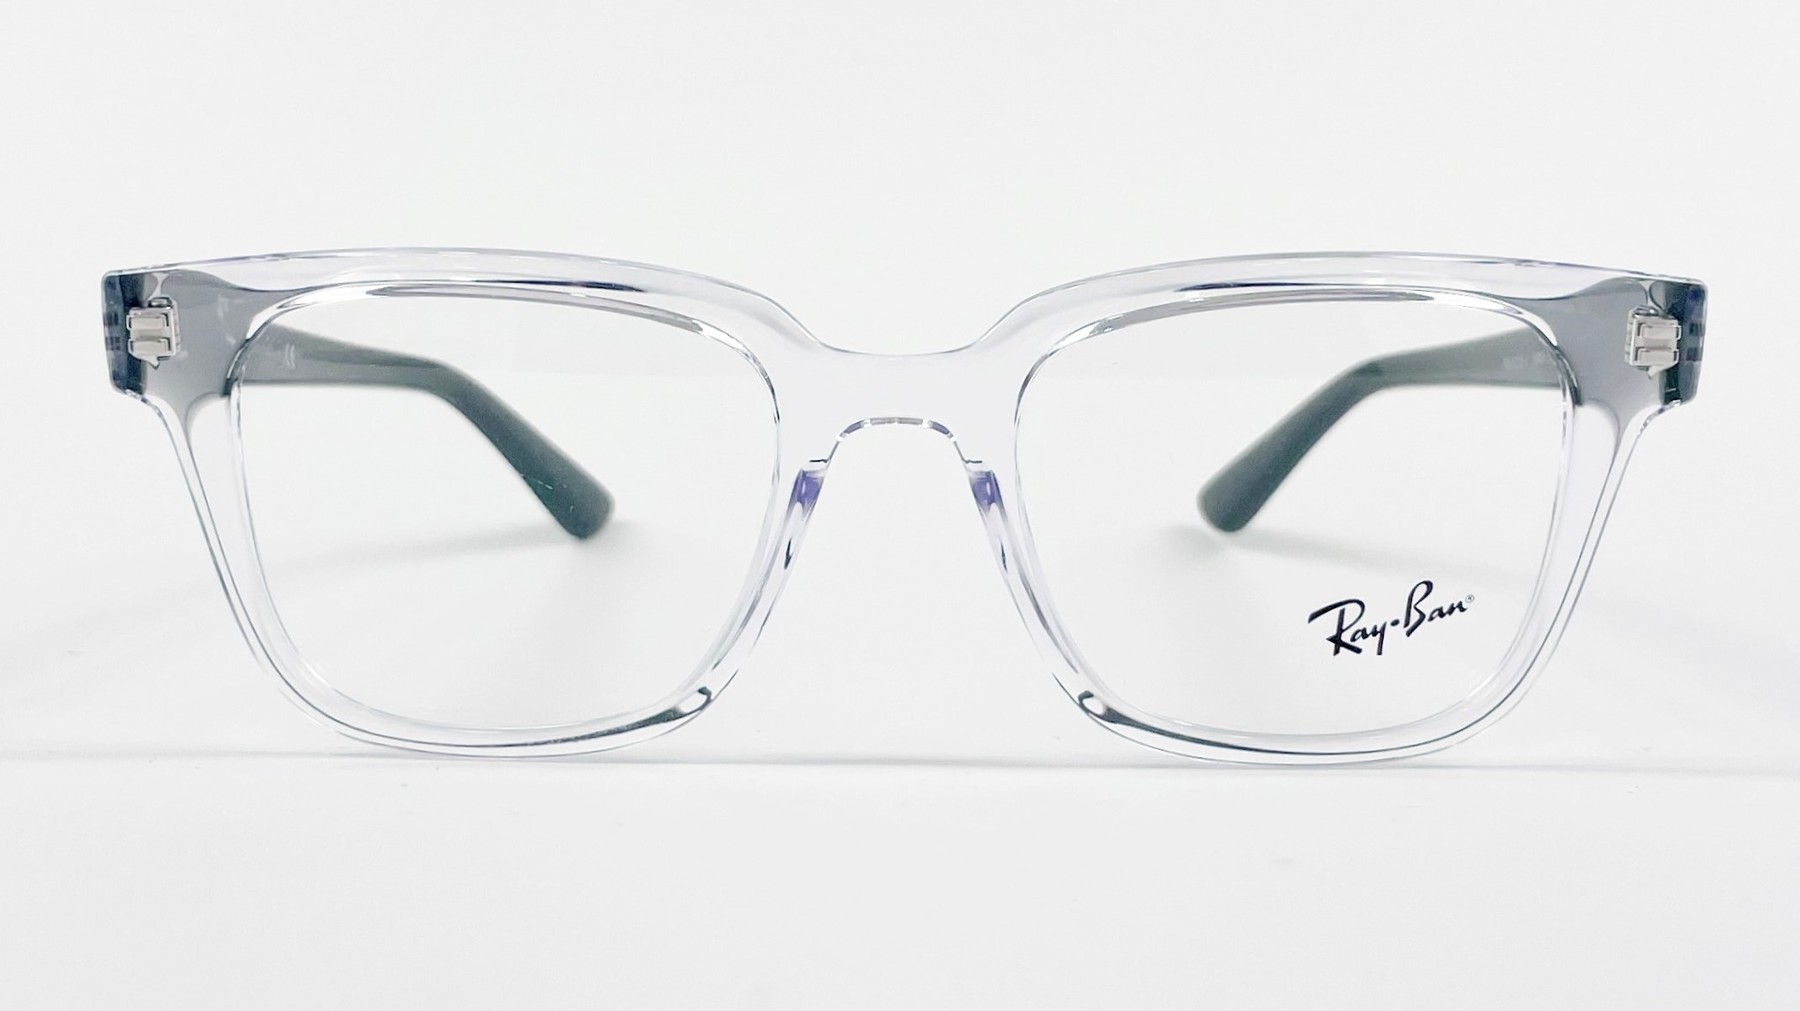 RayBan RB4323 5949, Korean glasses, sunglasses, eyeglasses, glasses